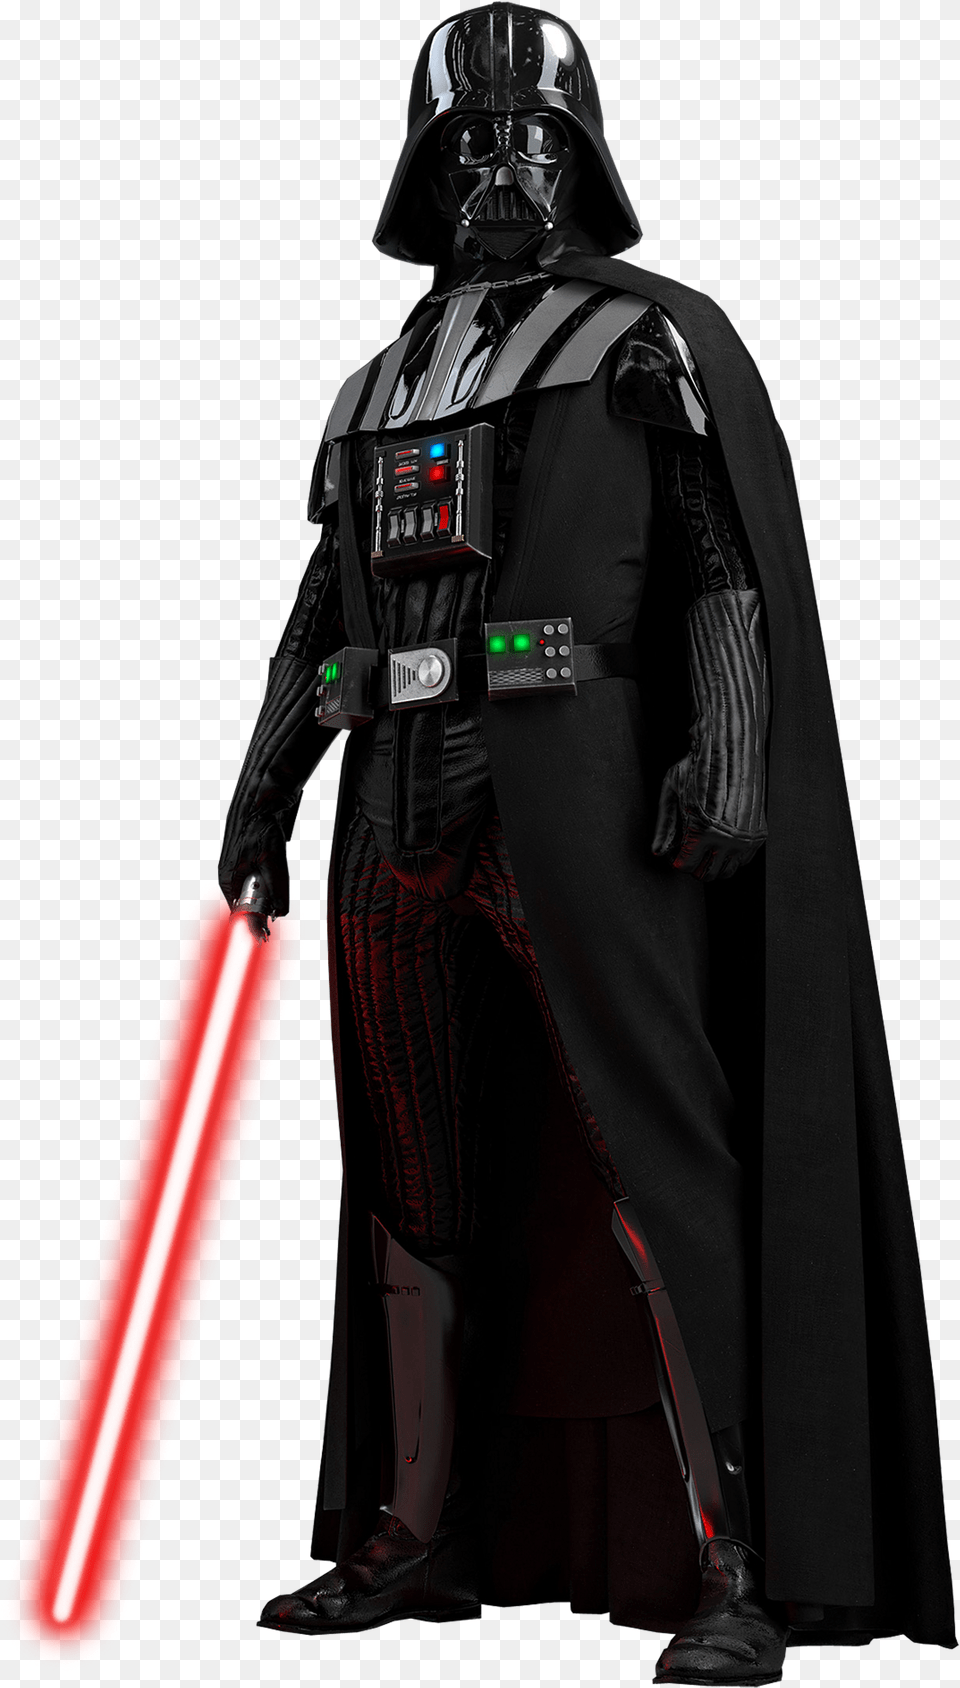 Darth Vader Background Darth Vader, Dynamite, Weapon Free Transparent Png